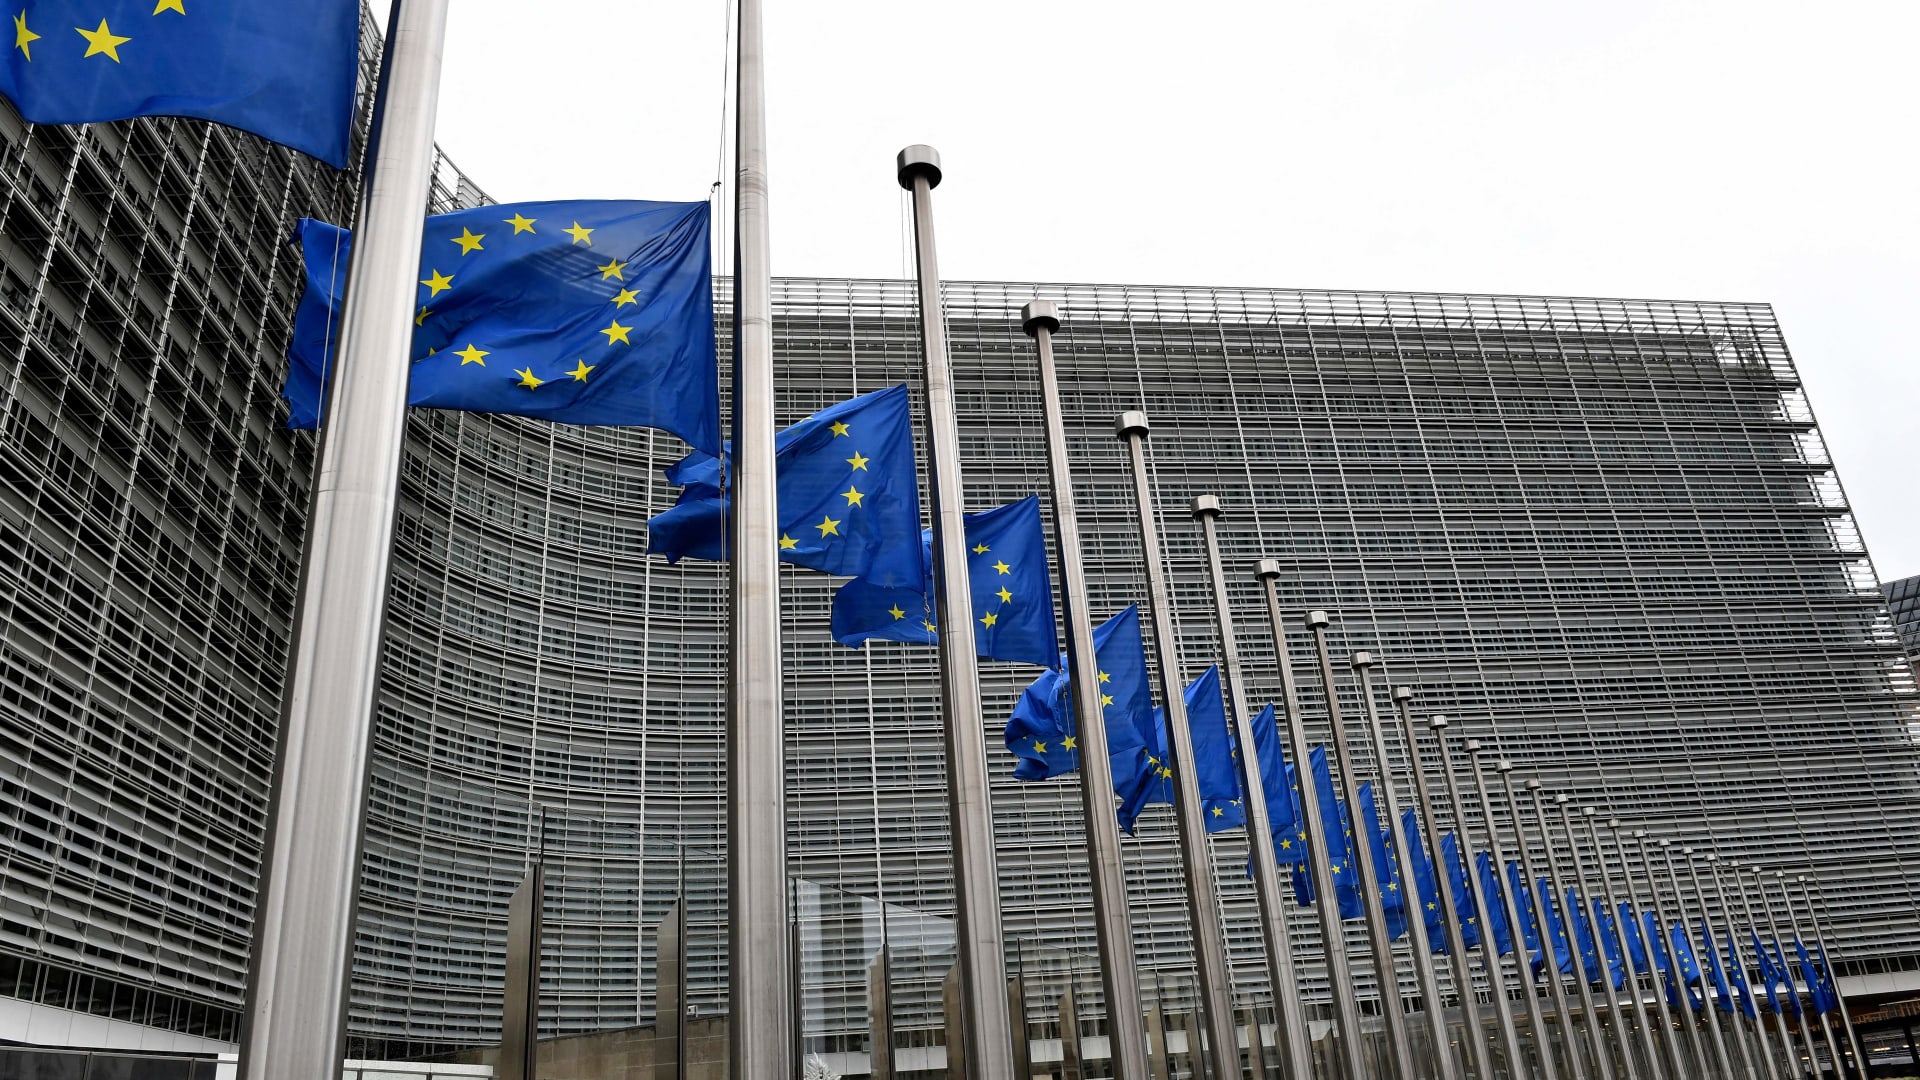 The EU headquarters in Brussels.